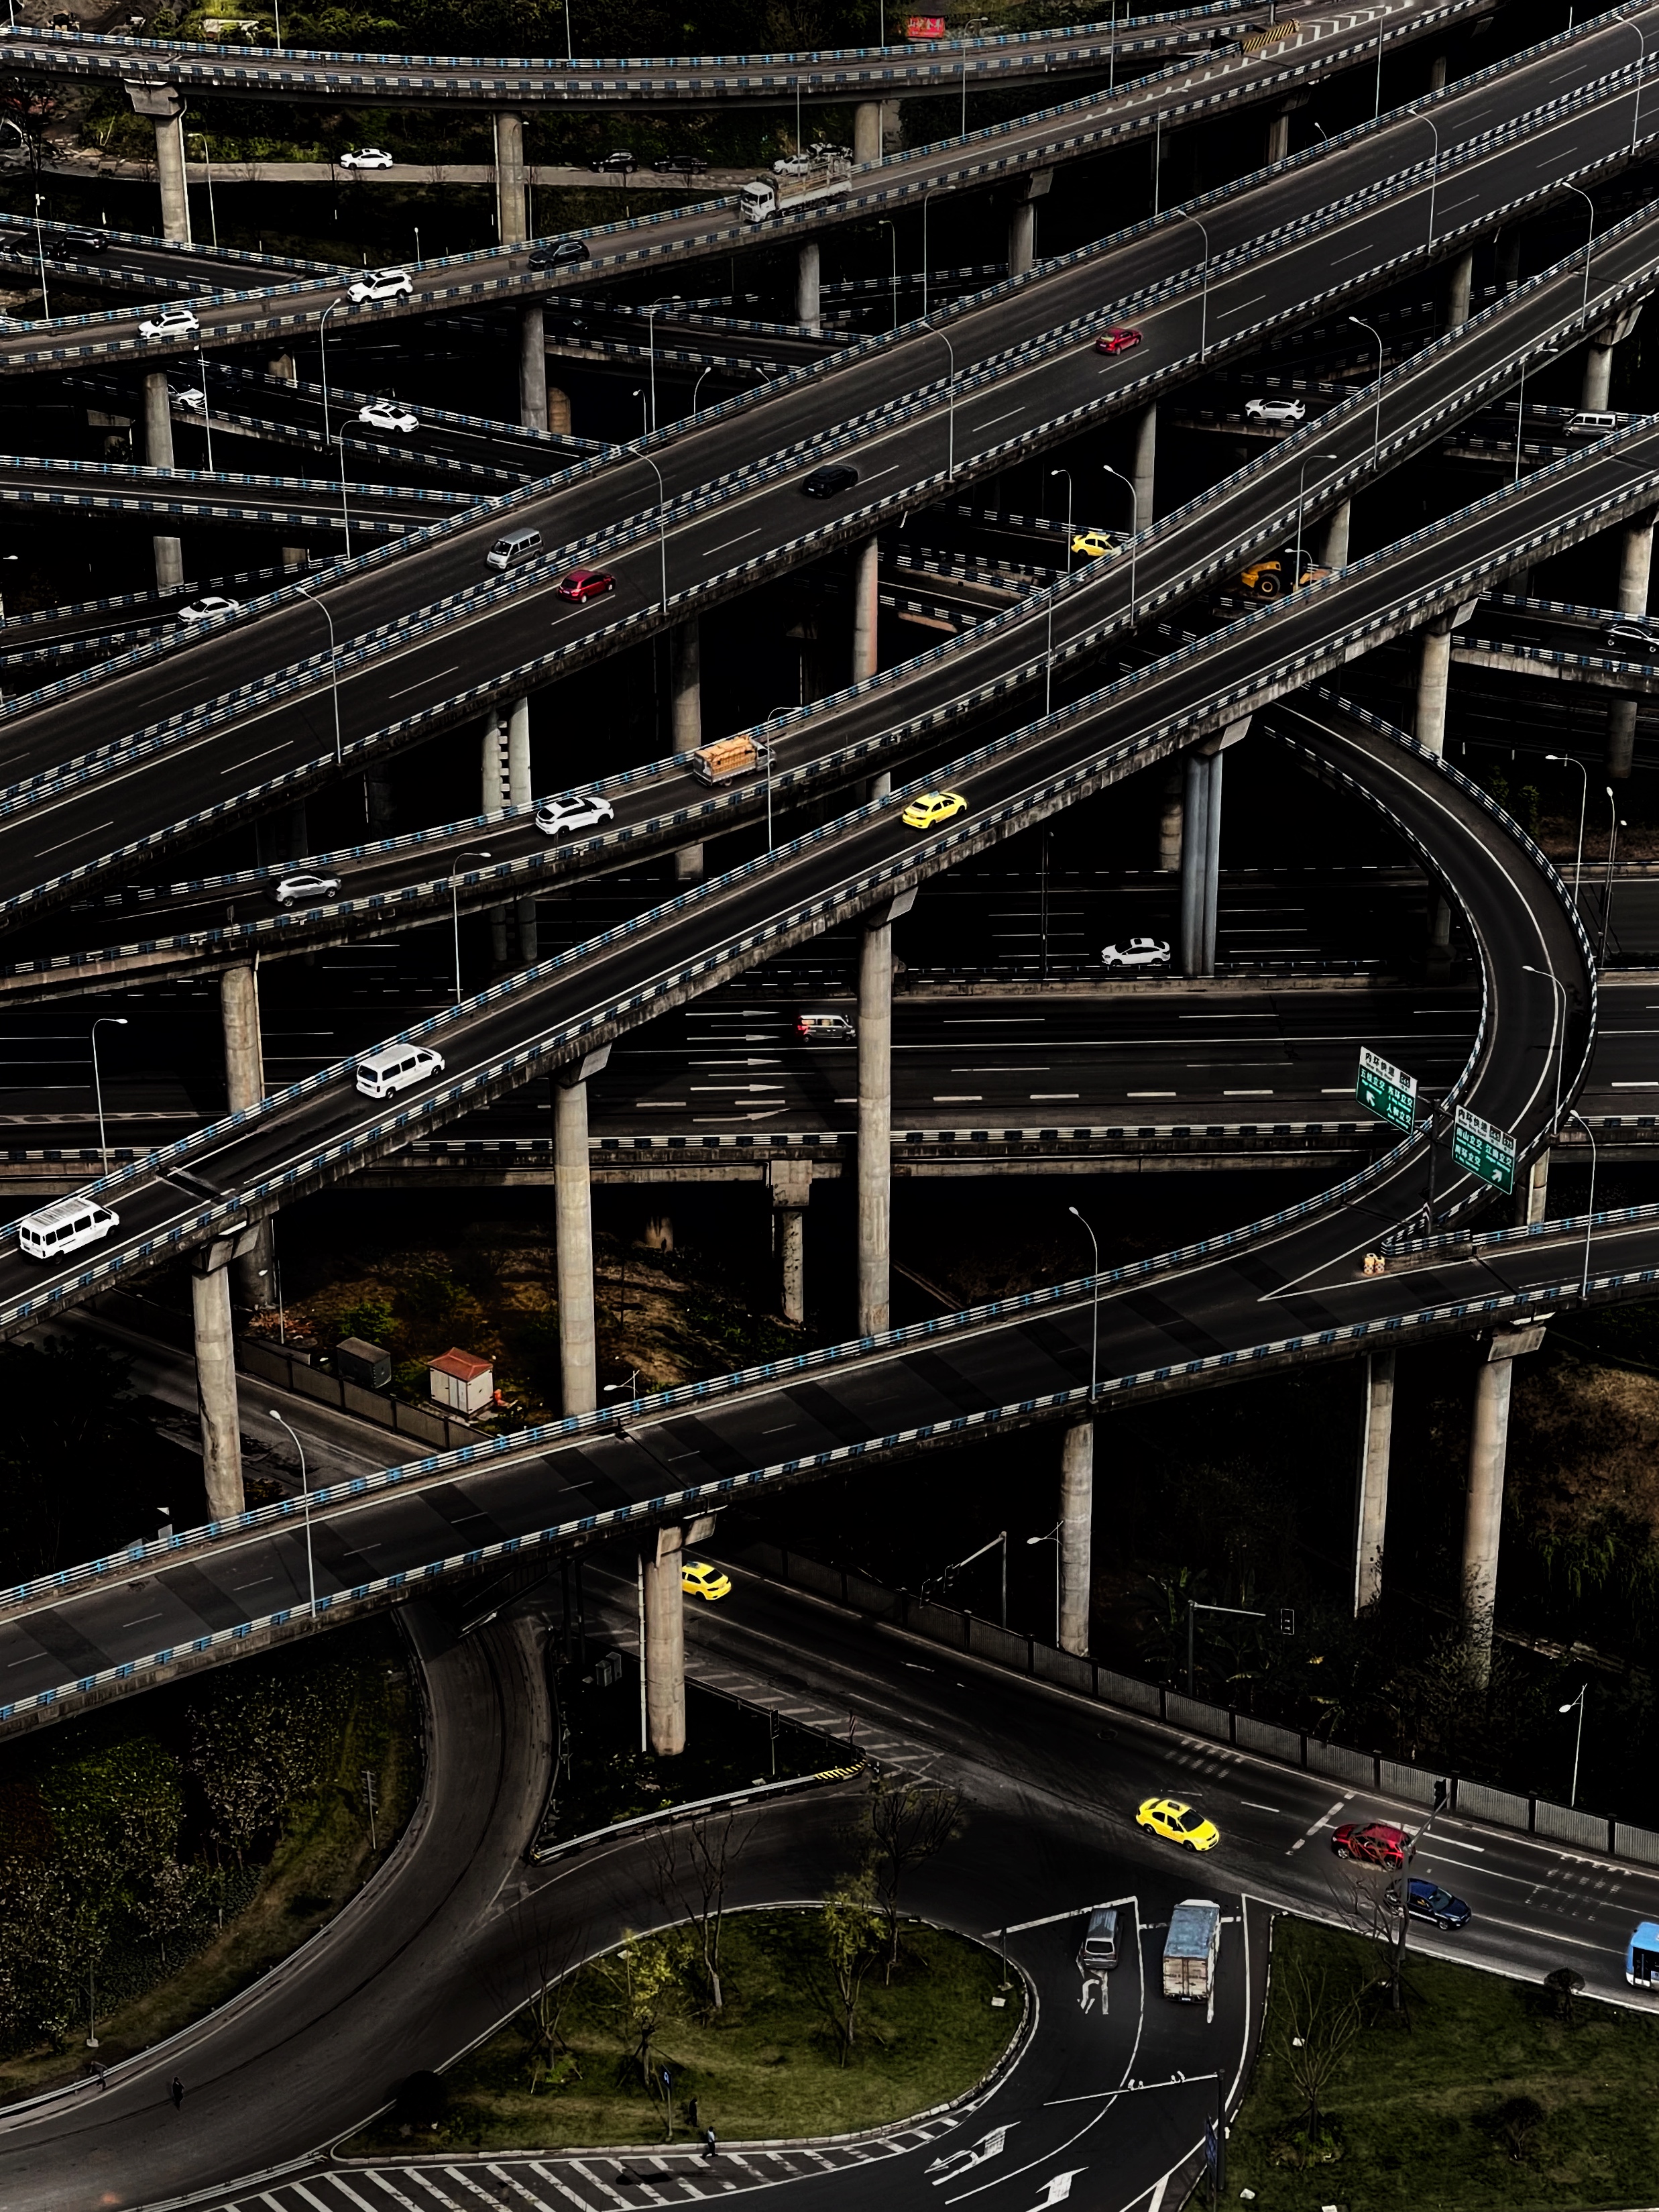 "Over the Overpass". © Yongmei Wang - IPPAWARDS.